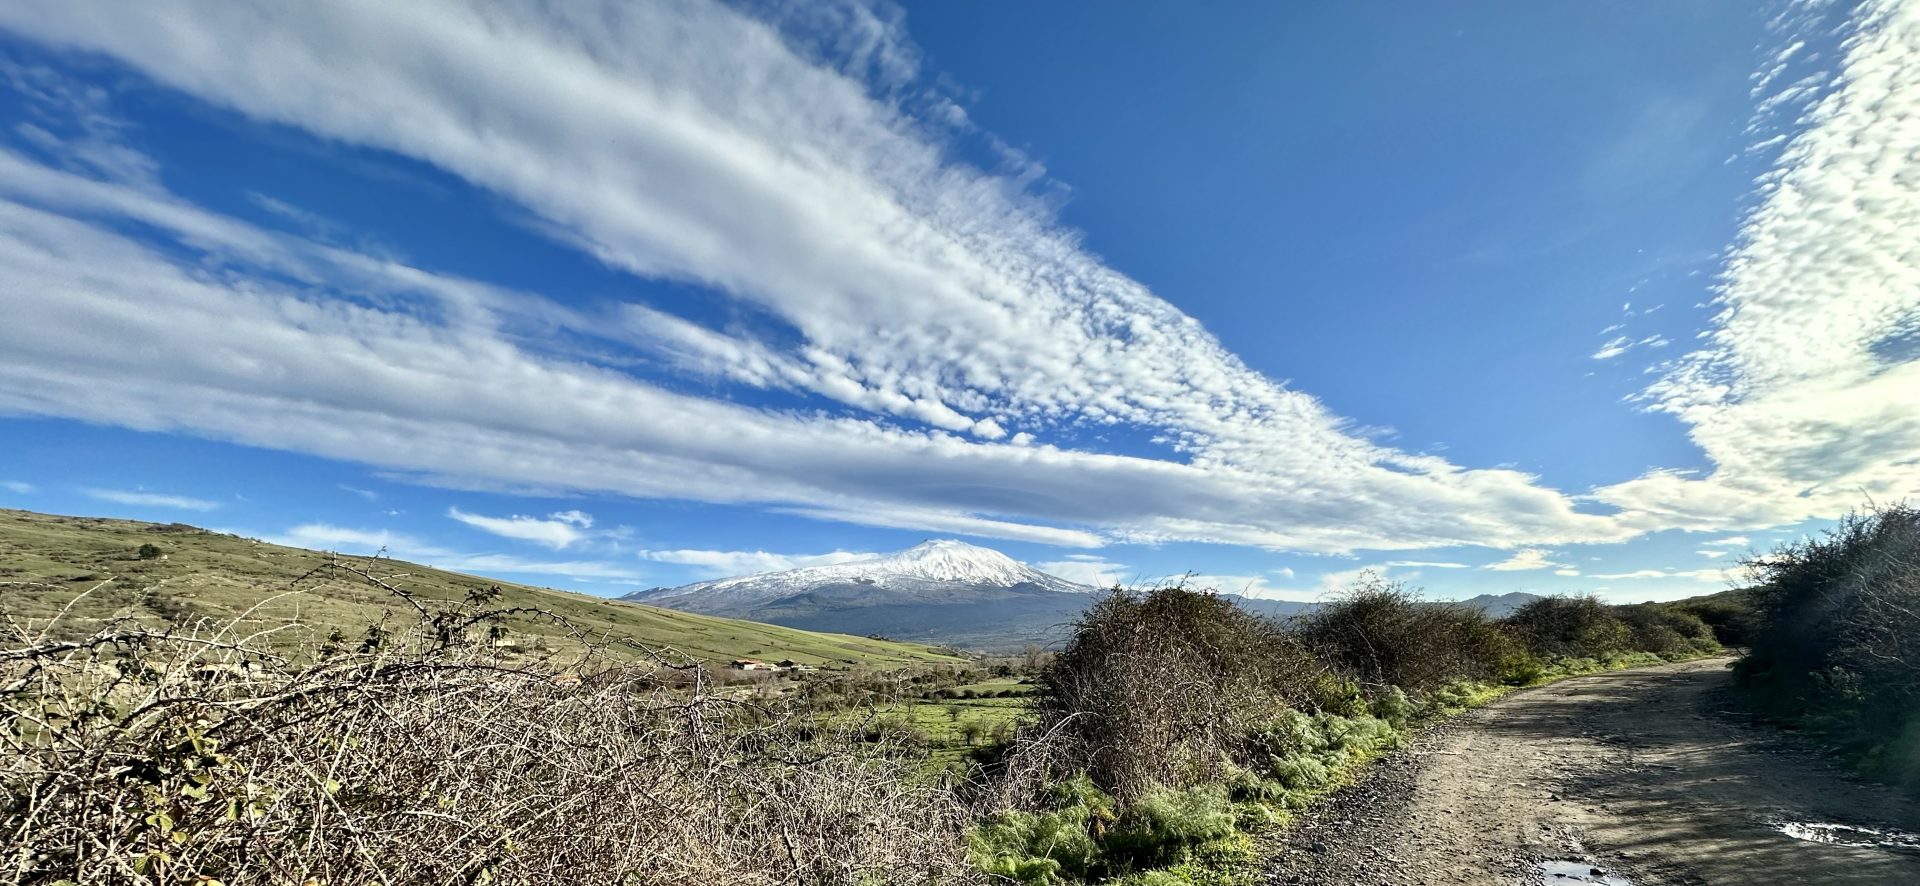 Foto dell' Etna innevata durante una escursione in mountainibke 